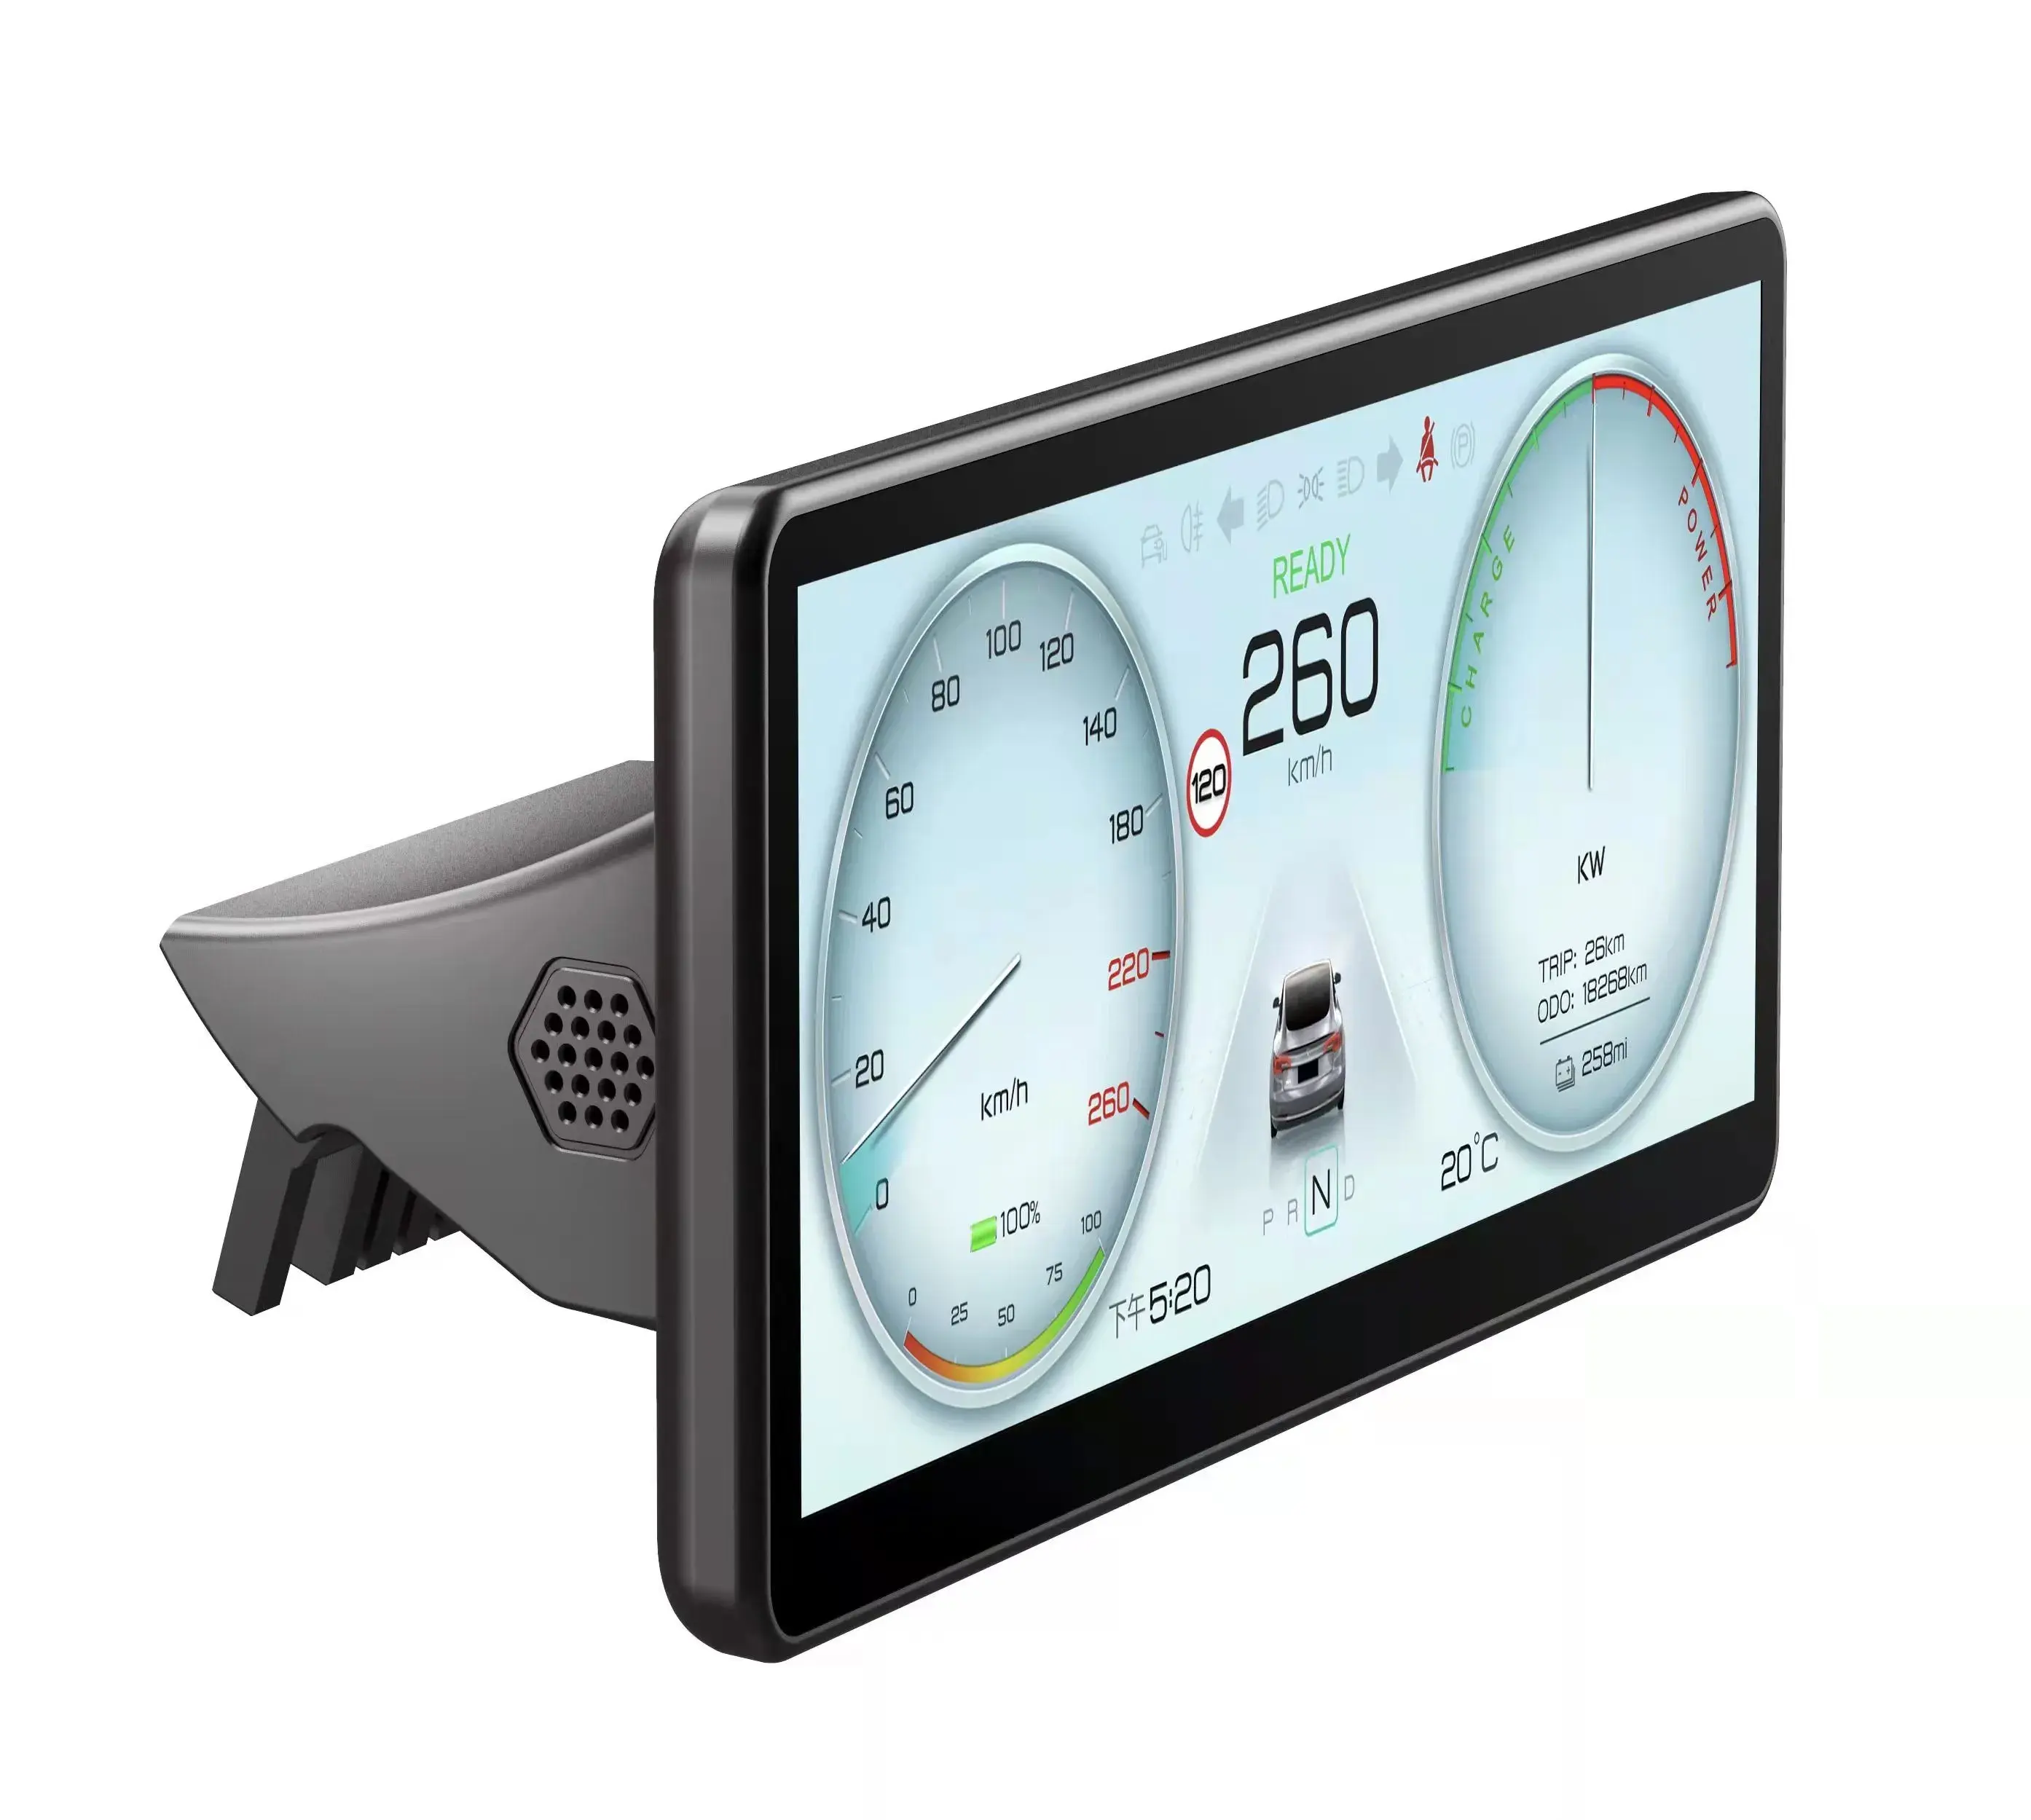 نظام تحديد المواقع والملاحة التلقائي عرض لوحة القيادة الرقمية نموذج تسلا Y 3 لوحة القيادة متر سرعة الشاشة